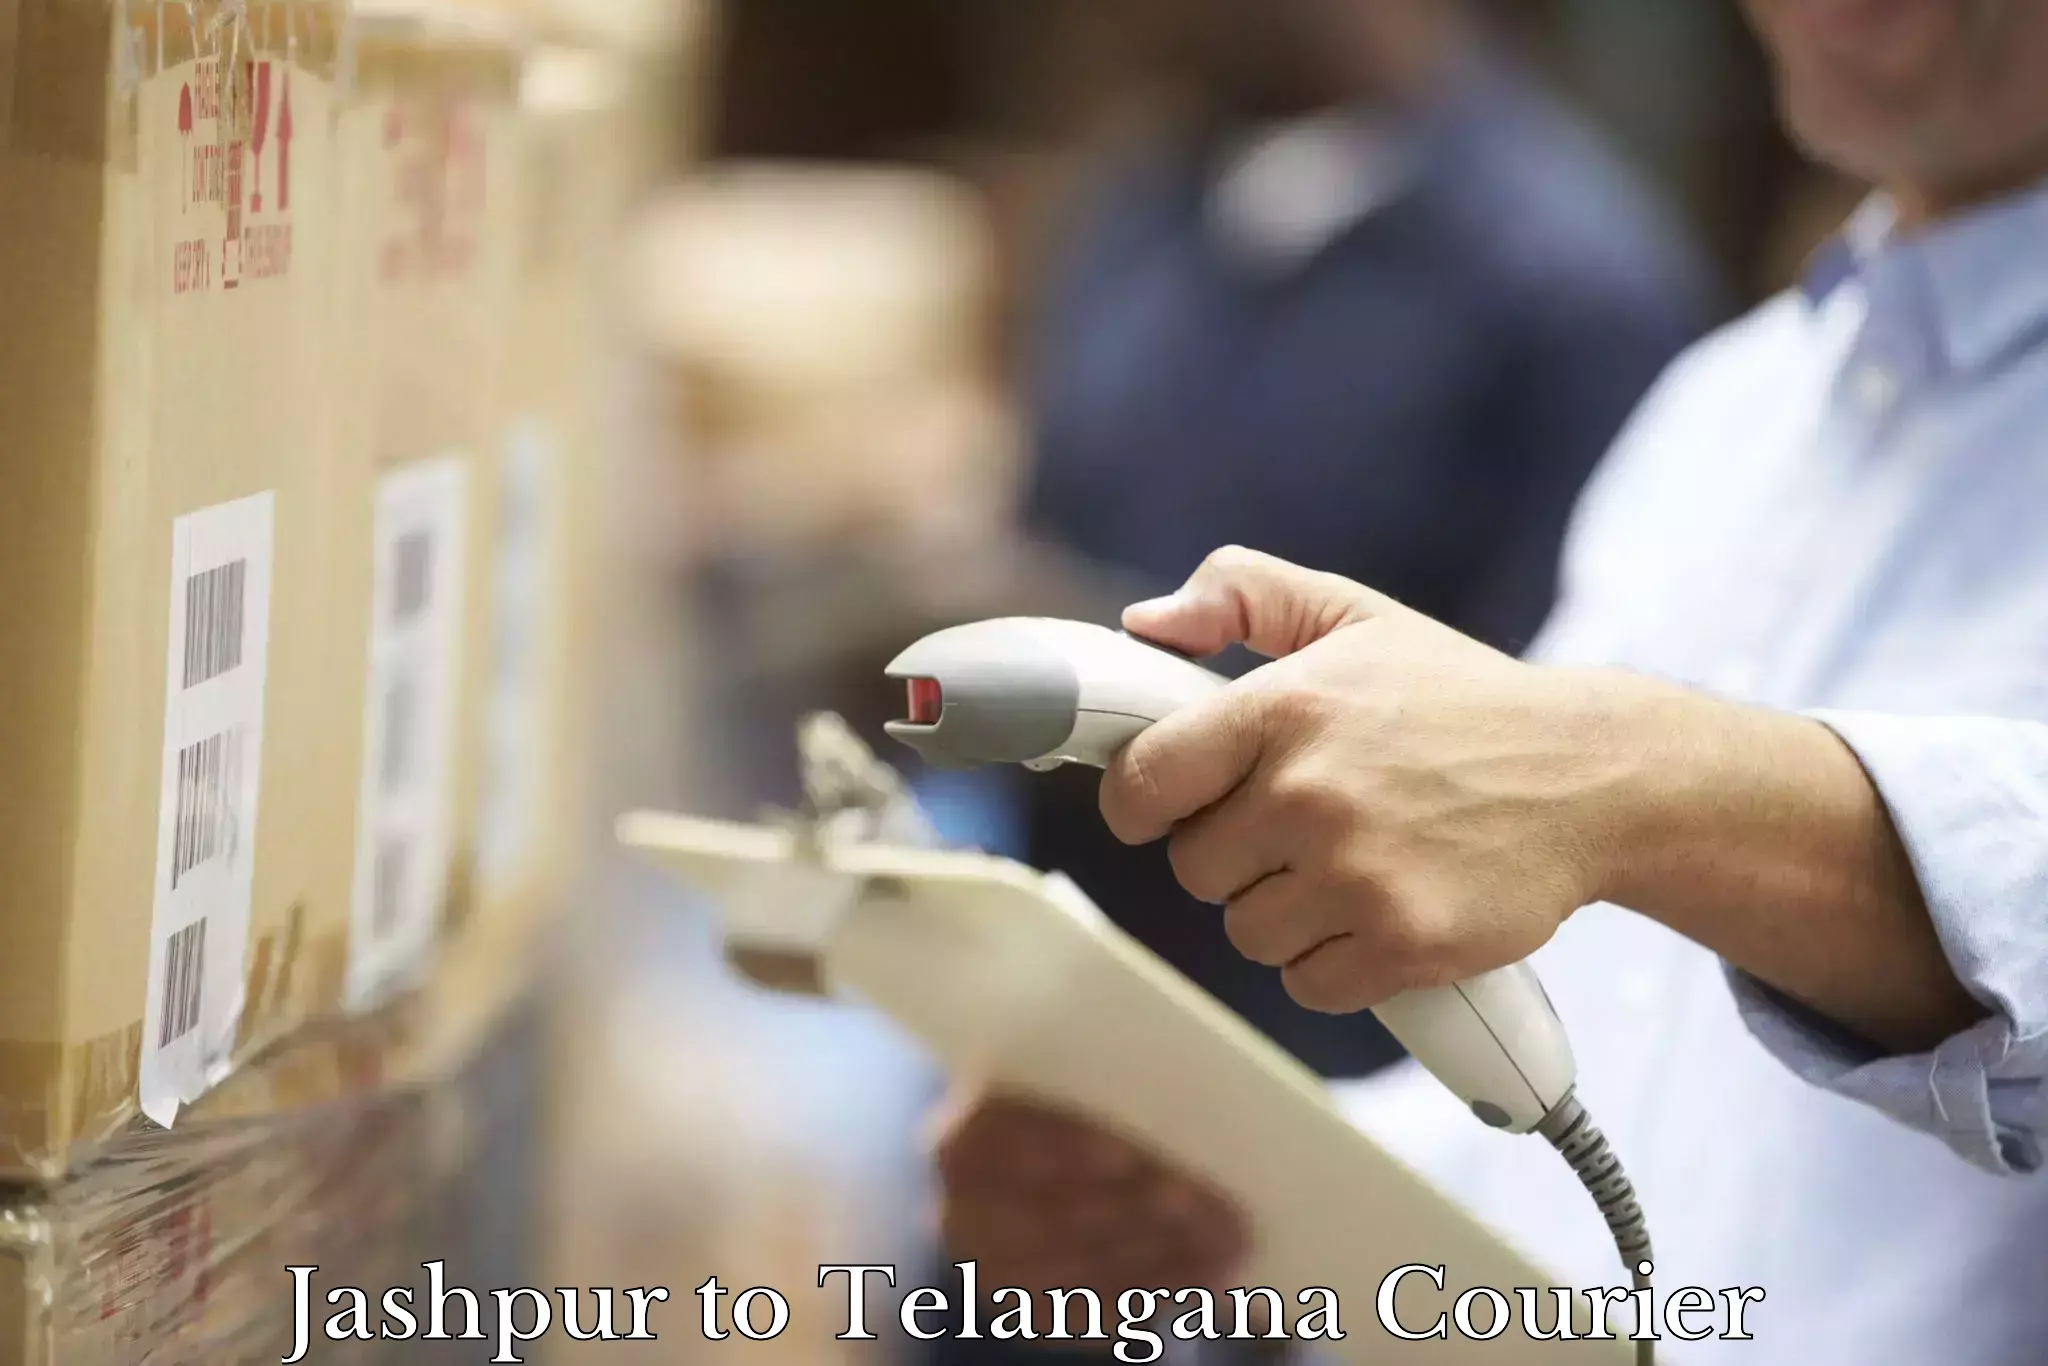 Premium courier services Jashpur to Karimnagar